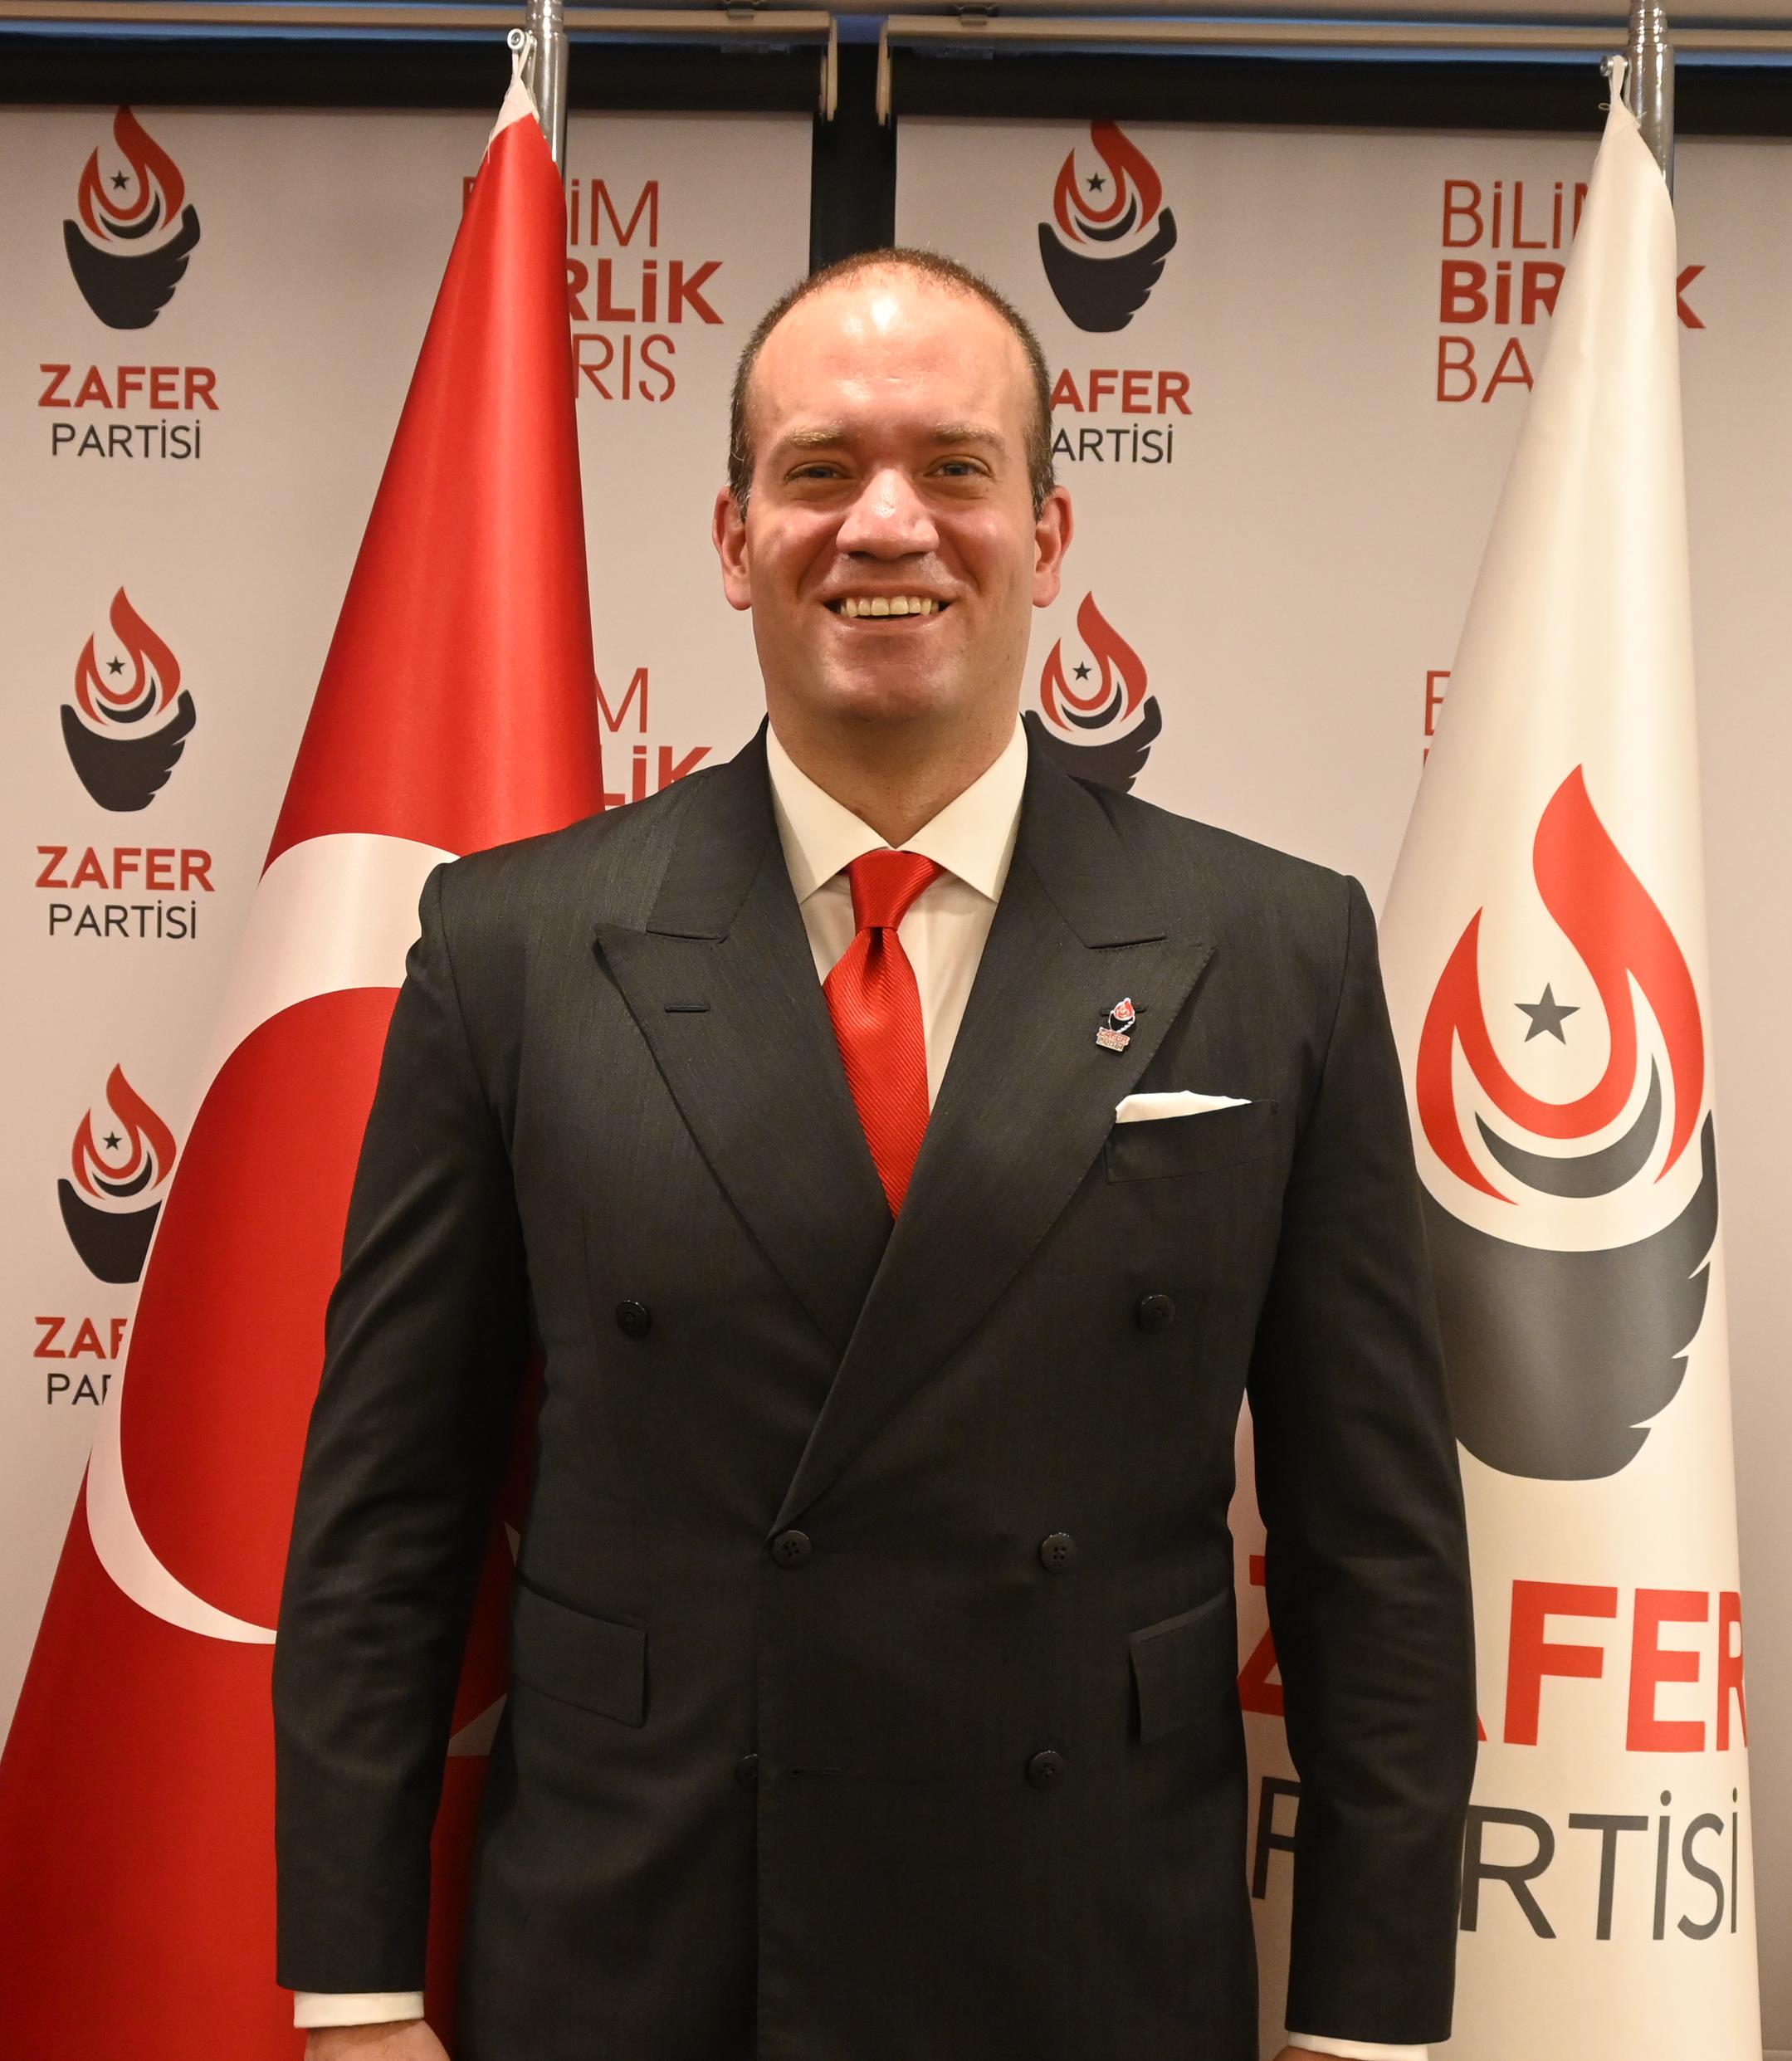 Zafer Partisi Diplomasiden Sorumlu Genel Başkan Yardımcısı Dr. Nezih İlter Karaman, Türkiye ile Avrupa Birliği (AB) arasındaki vize konusu hakkında açıklamalarda bulundu.